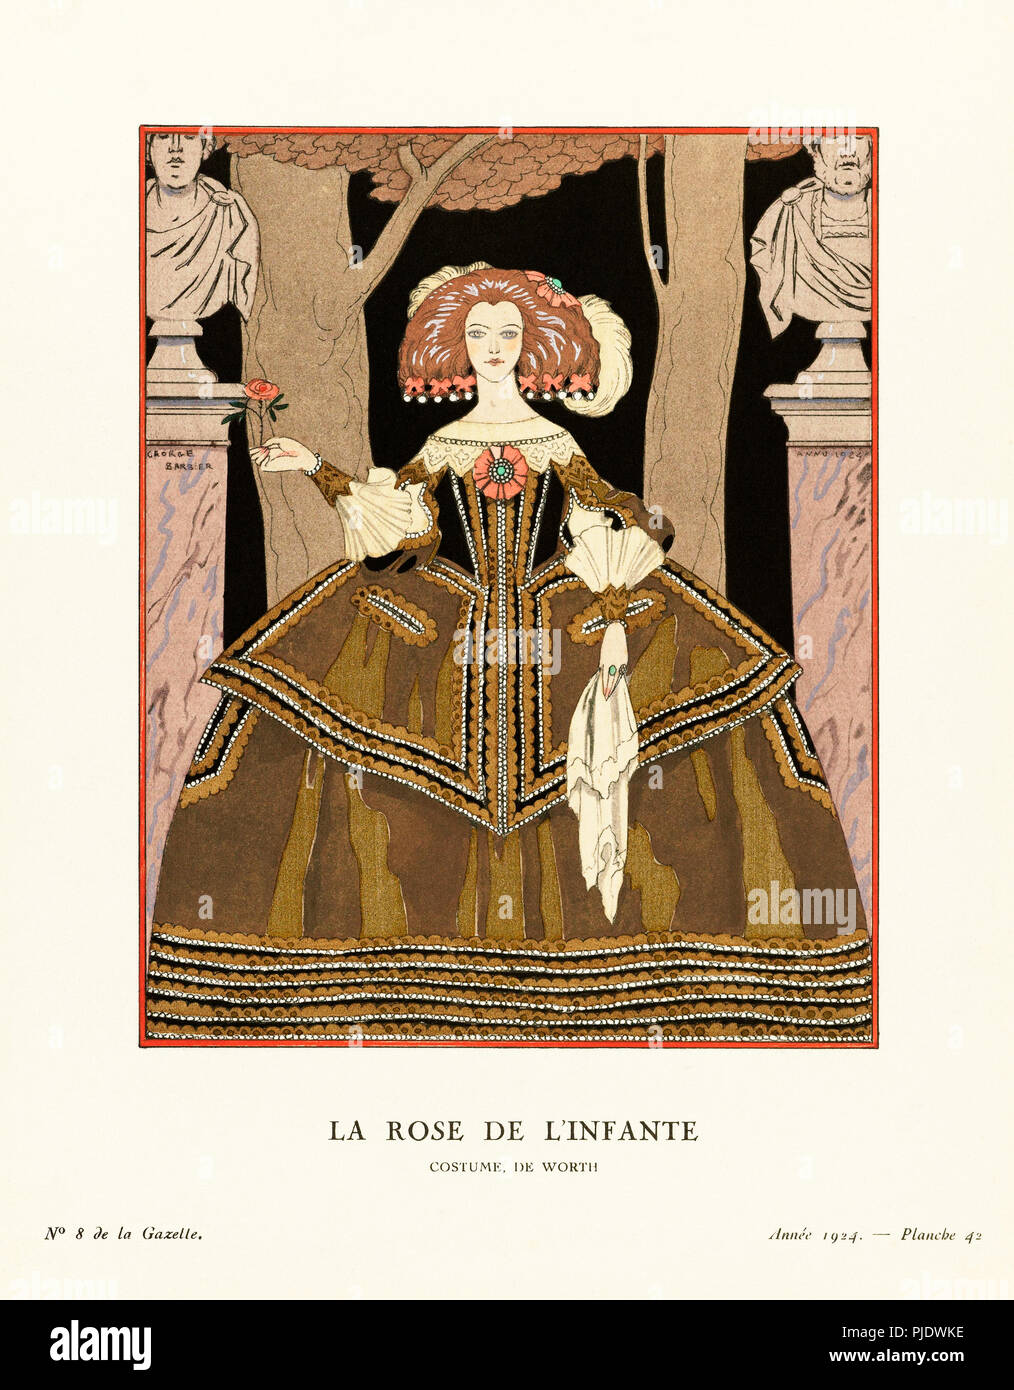 La Rose de l'infante. Die Infantin’s Rose. (Eine infantin ist eine Tochter des regierenden Monarchen von Spanien oder Portugal). Kostüm, de Worth. Kostüm von Worth. Art-Deco-Mode-Illustration des französischen Künstlers Georges Barbier, 1882-1932. Die Arbeit wurde für die Gazette du Bon Ton, ein Pariser Modemagazin, erstellt, das zwischen 1912-1915 und 1919-1925 veröffentlicht wurde. Stockfoto